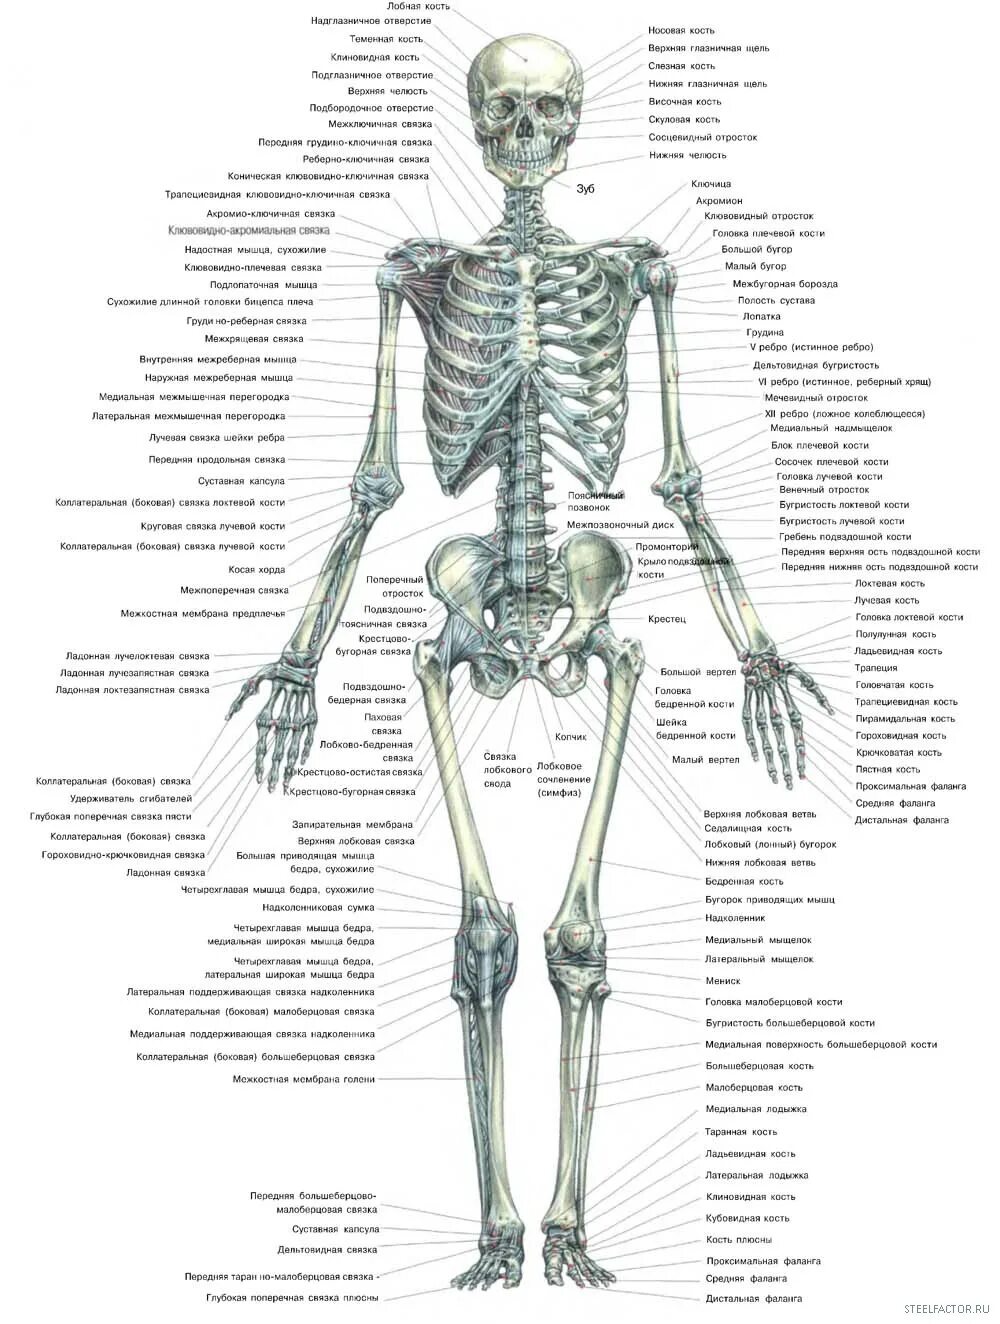 Подпишите названия костей скелета. Строение костей скелета. Анатомическое строение скелета человека. Строение скелета кости. Анатомия скелета человека с названиями костей.